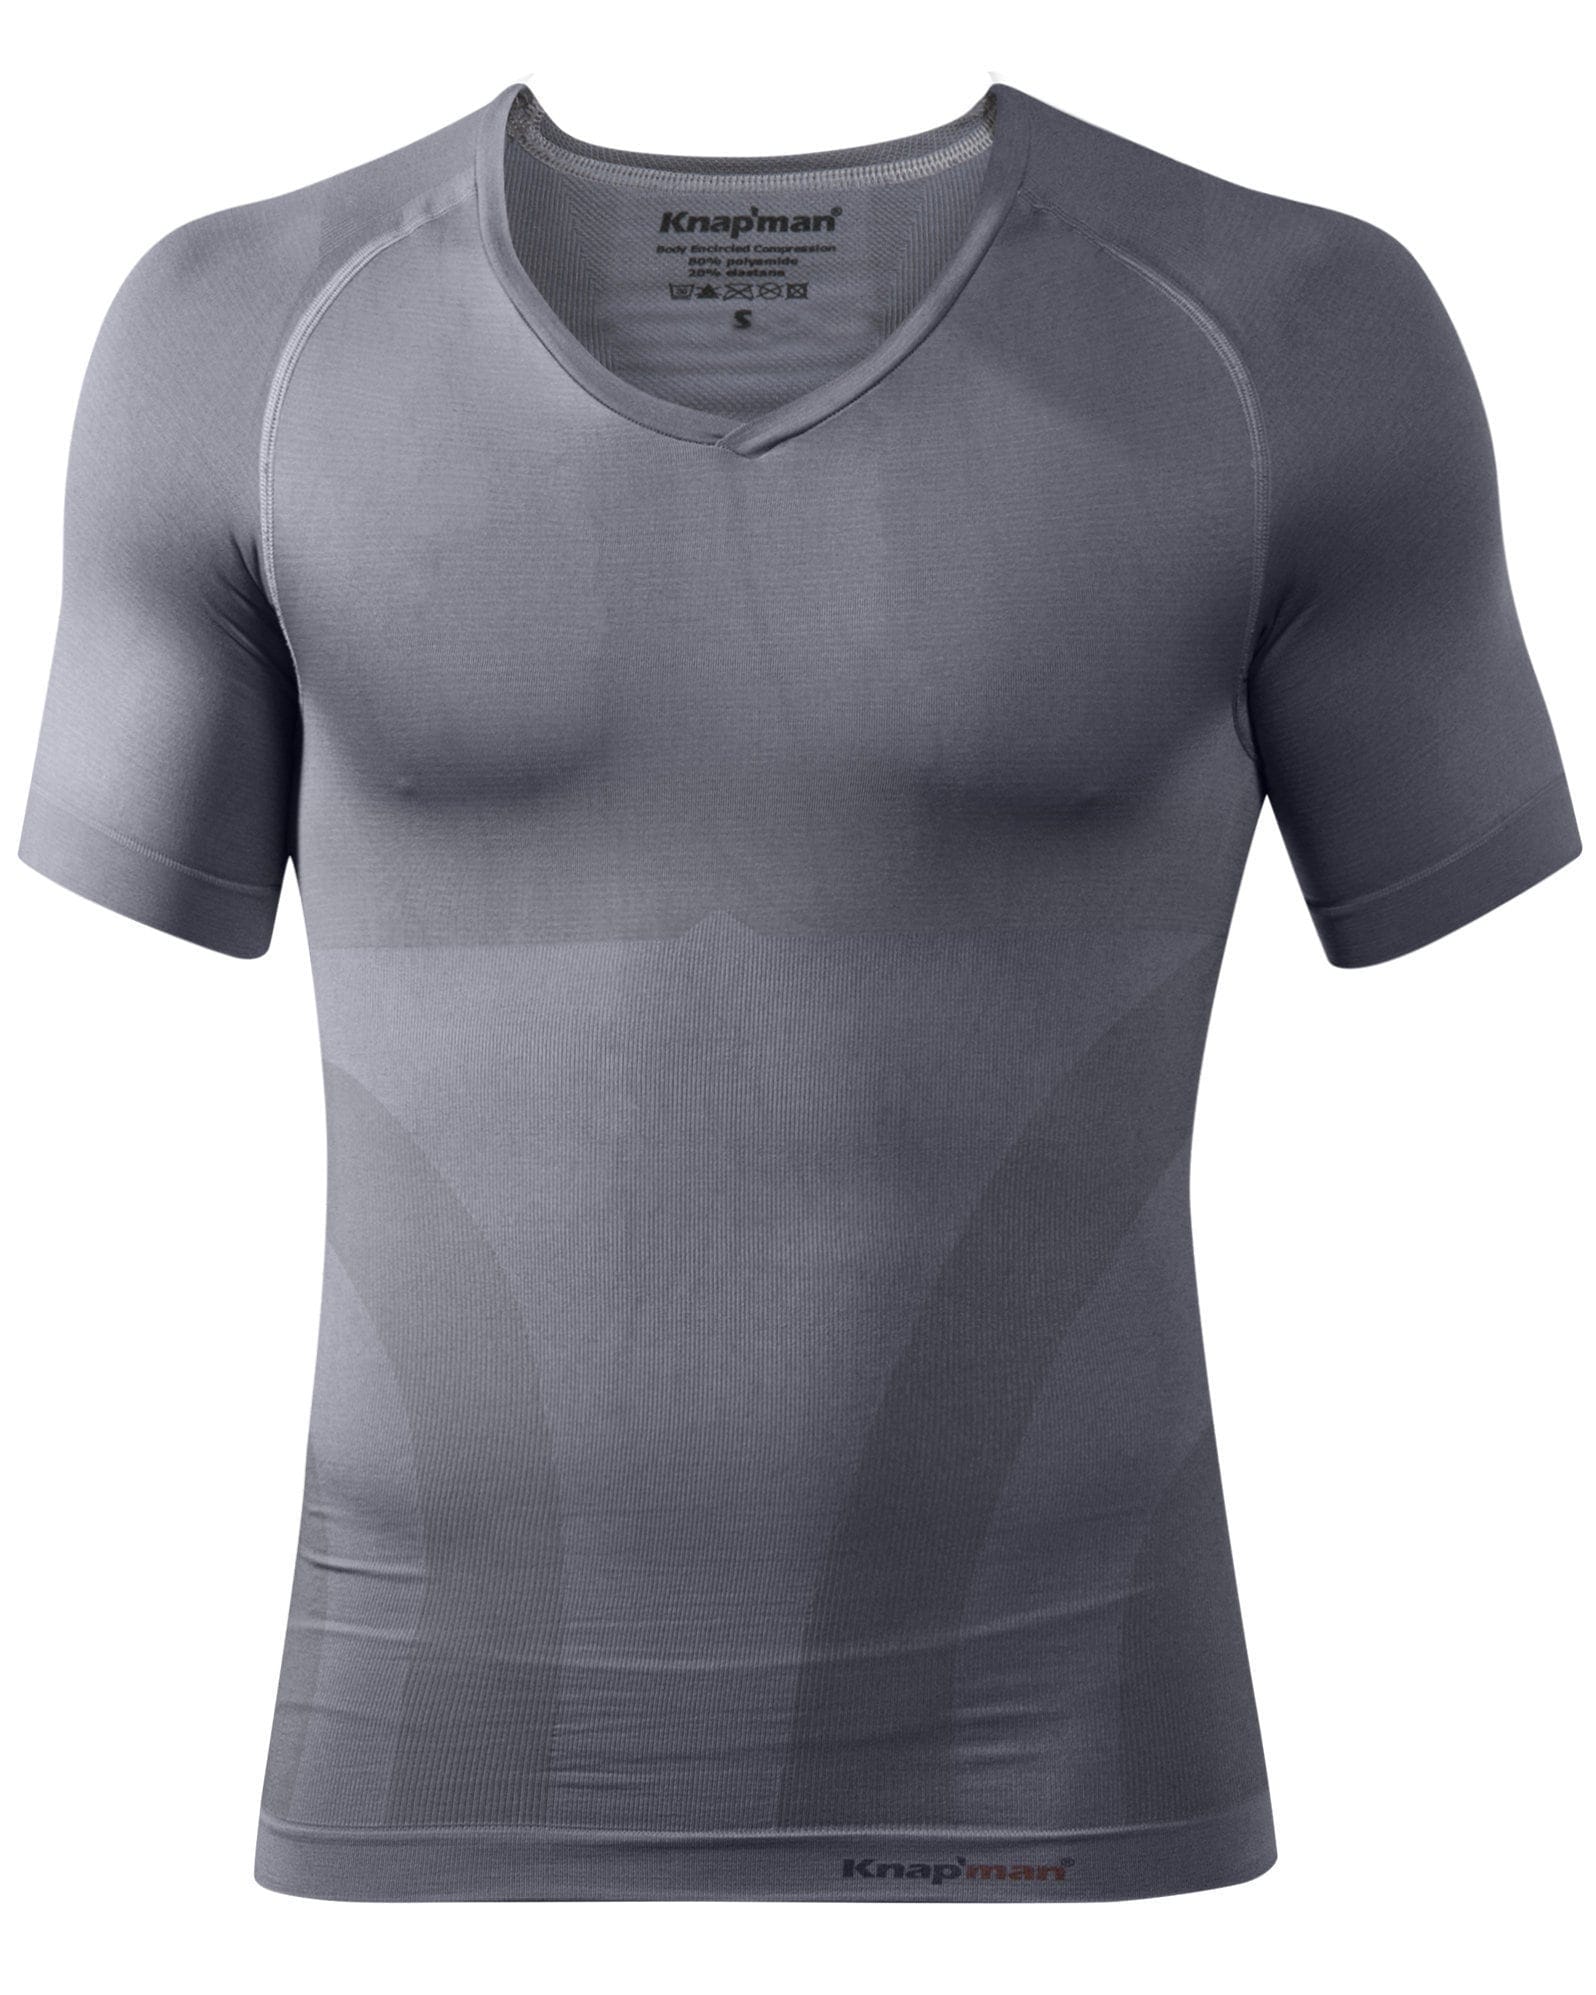 Knap'man compression shirt v-neck grey